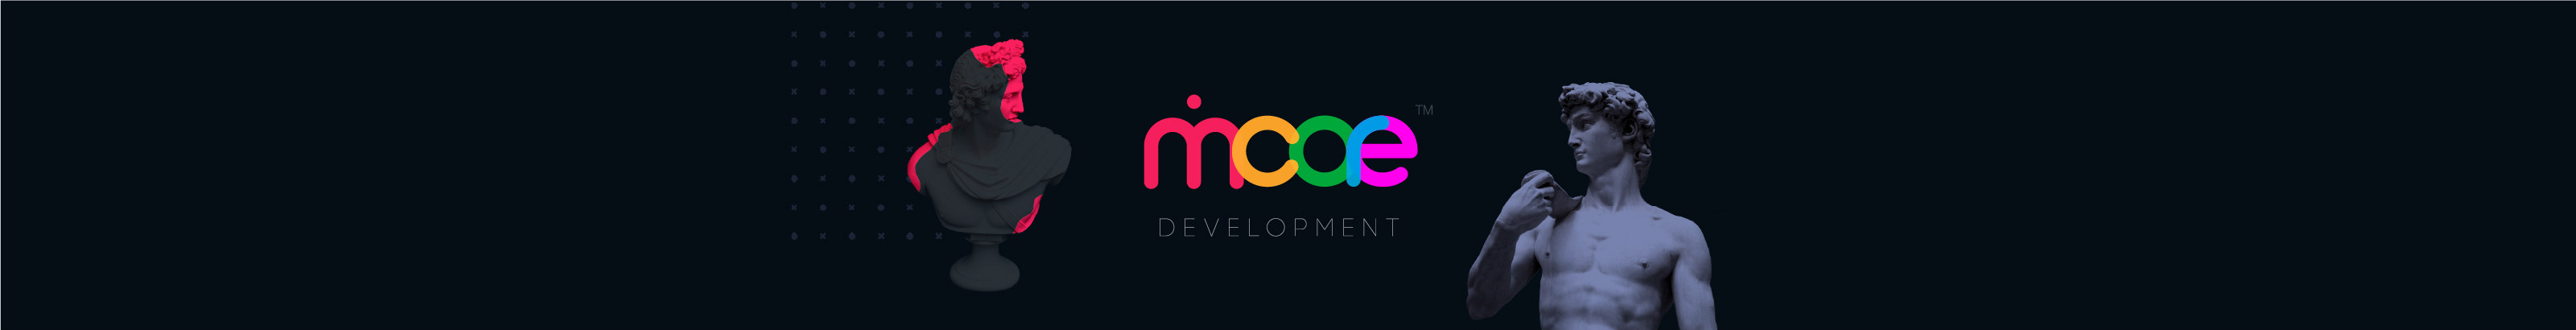 MantiCore Development's profile banner